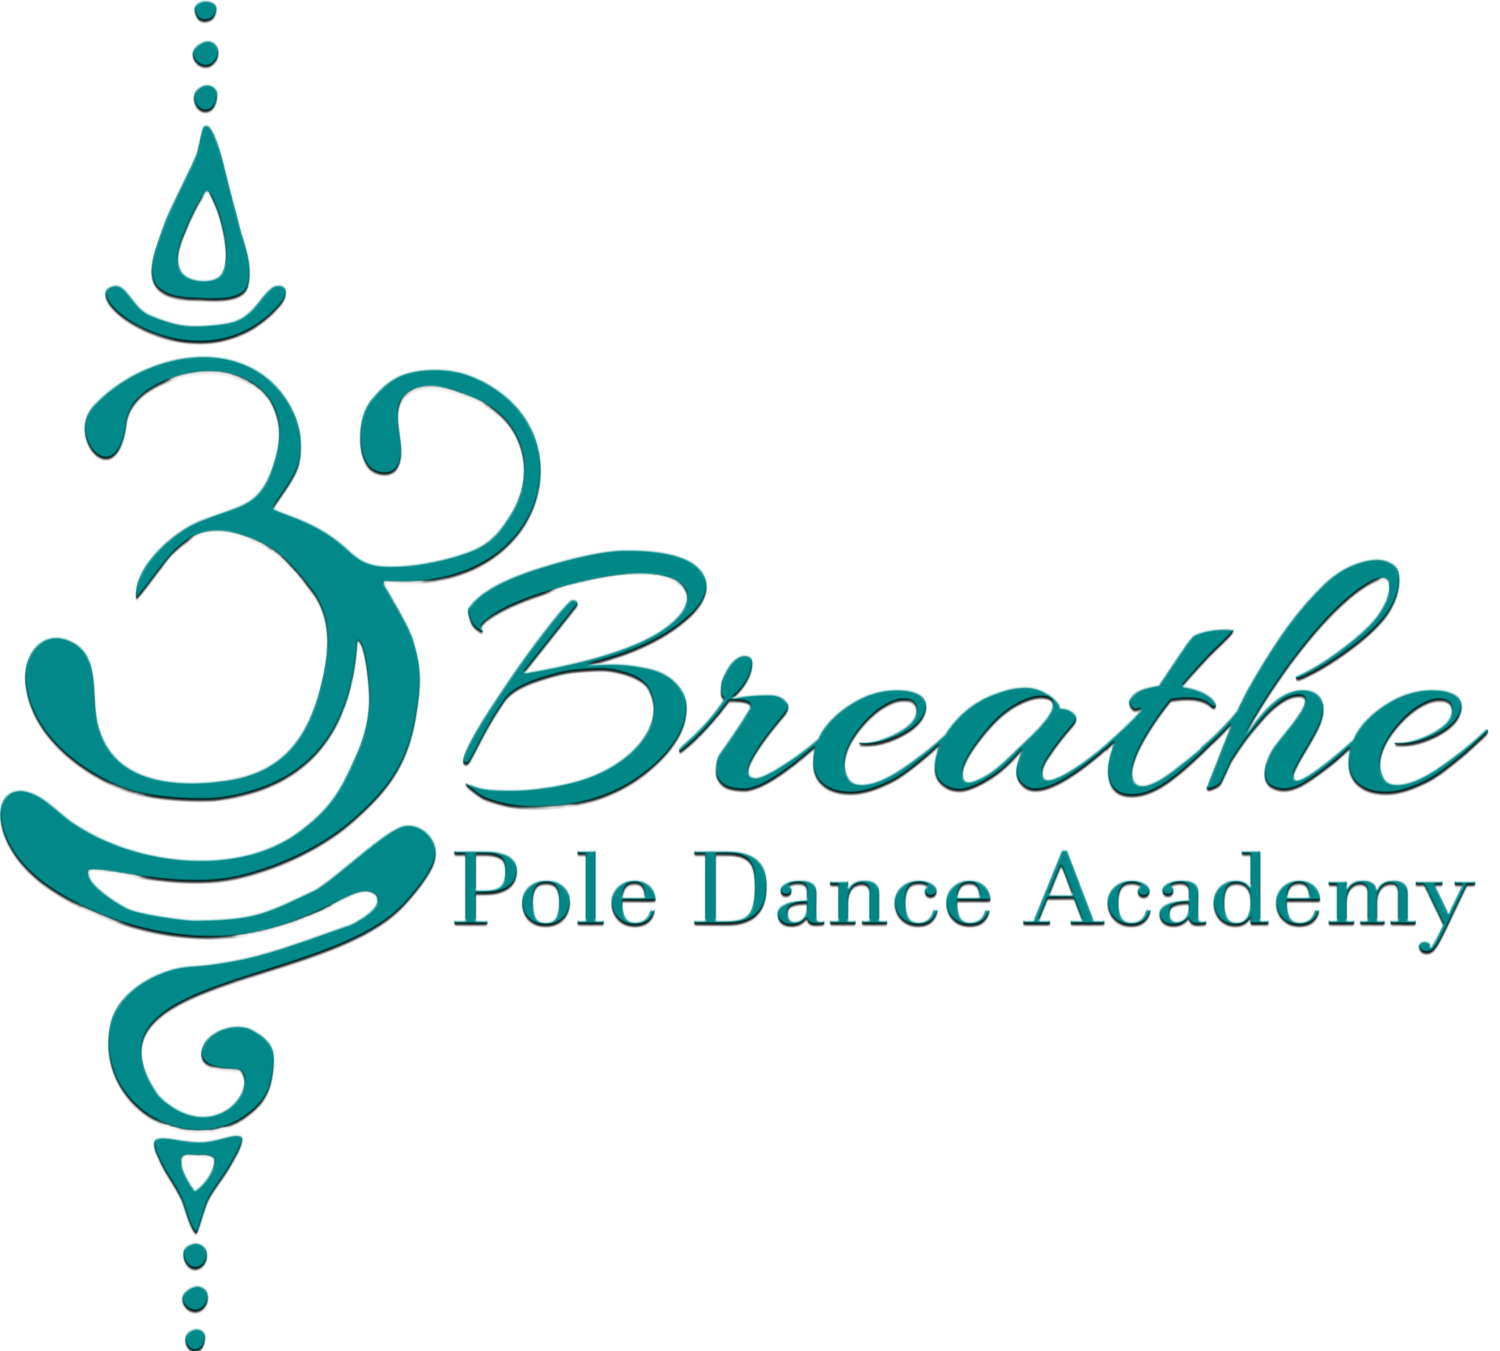 BREATH POLE DANCE ACADEMY